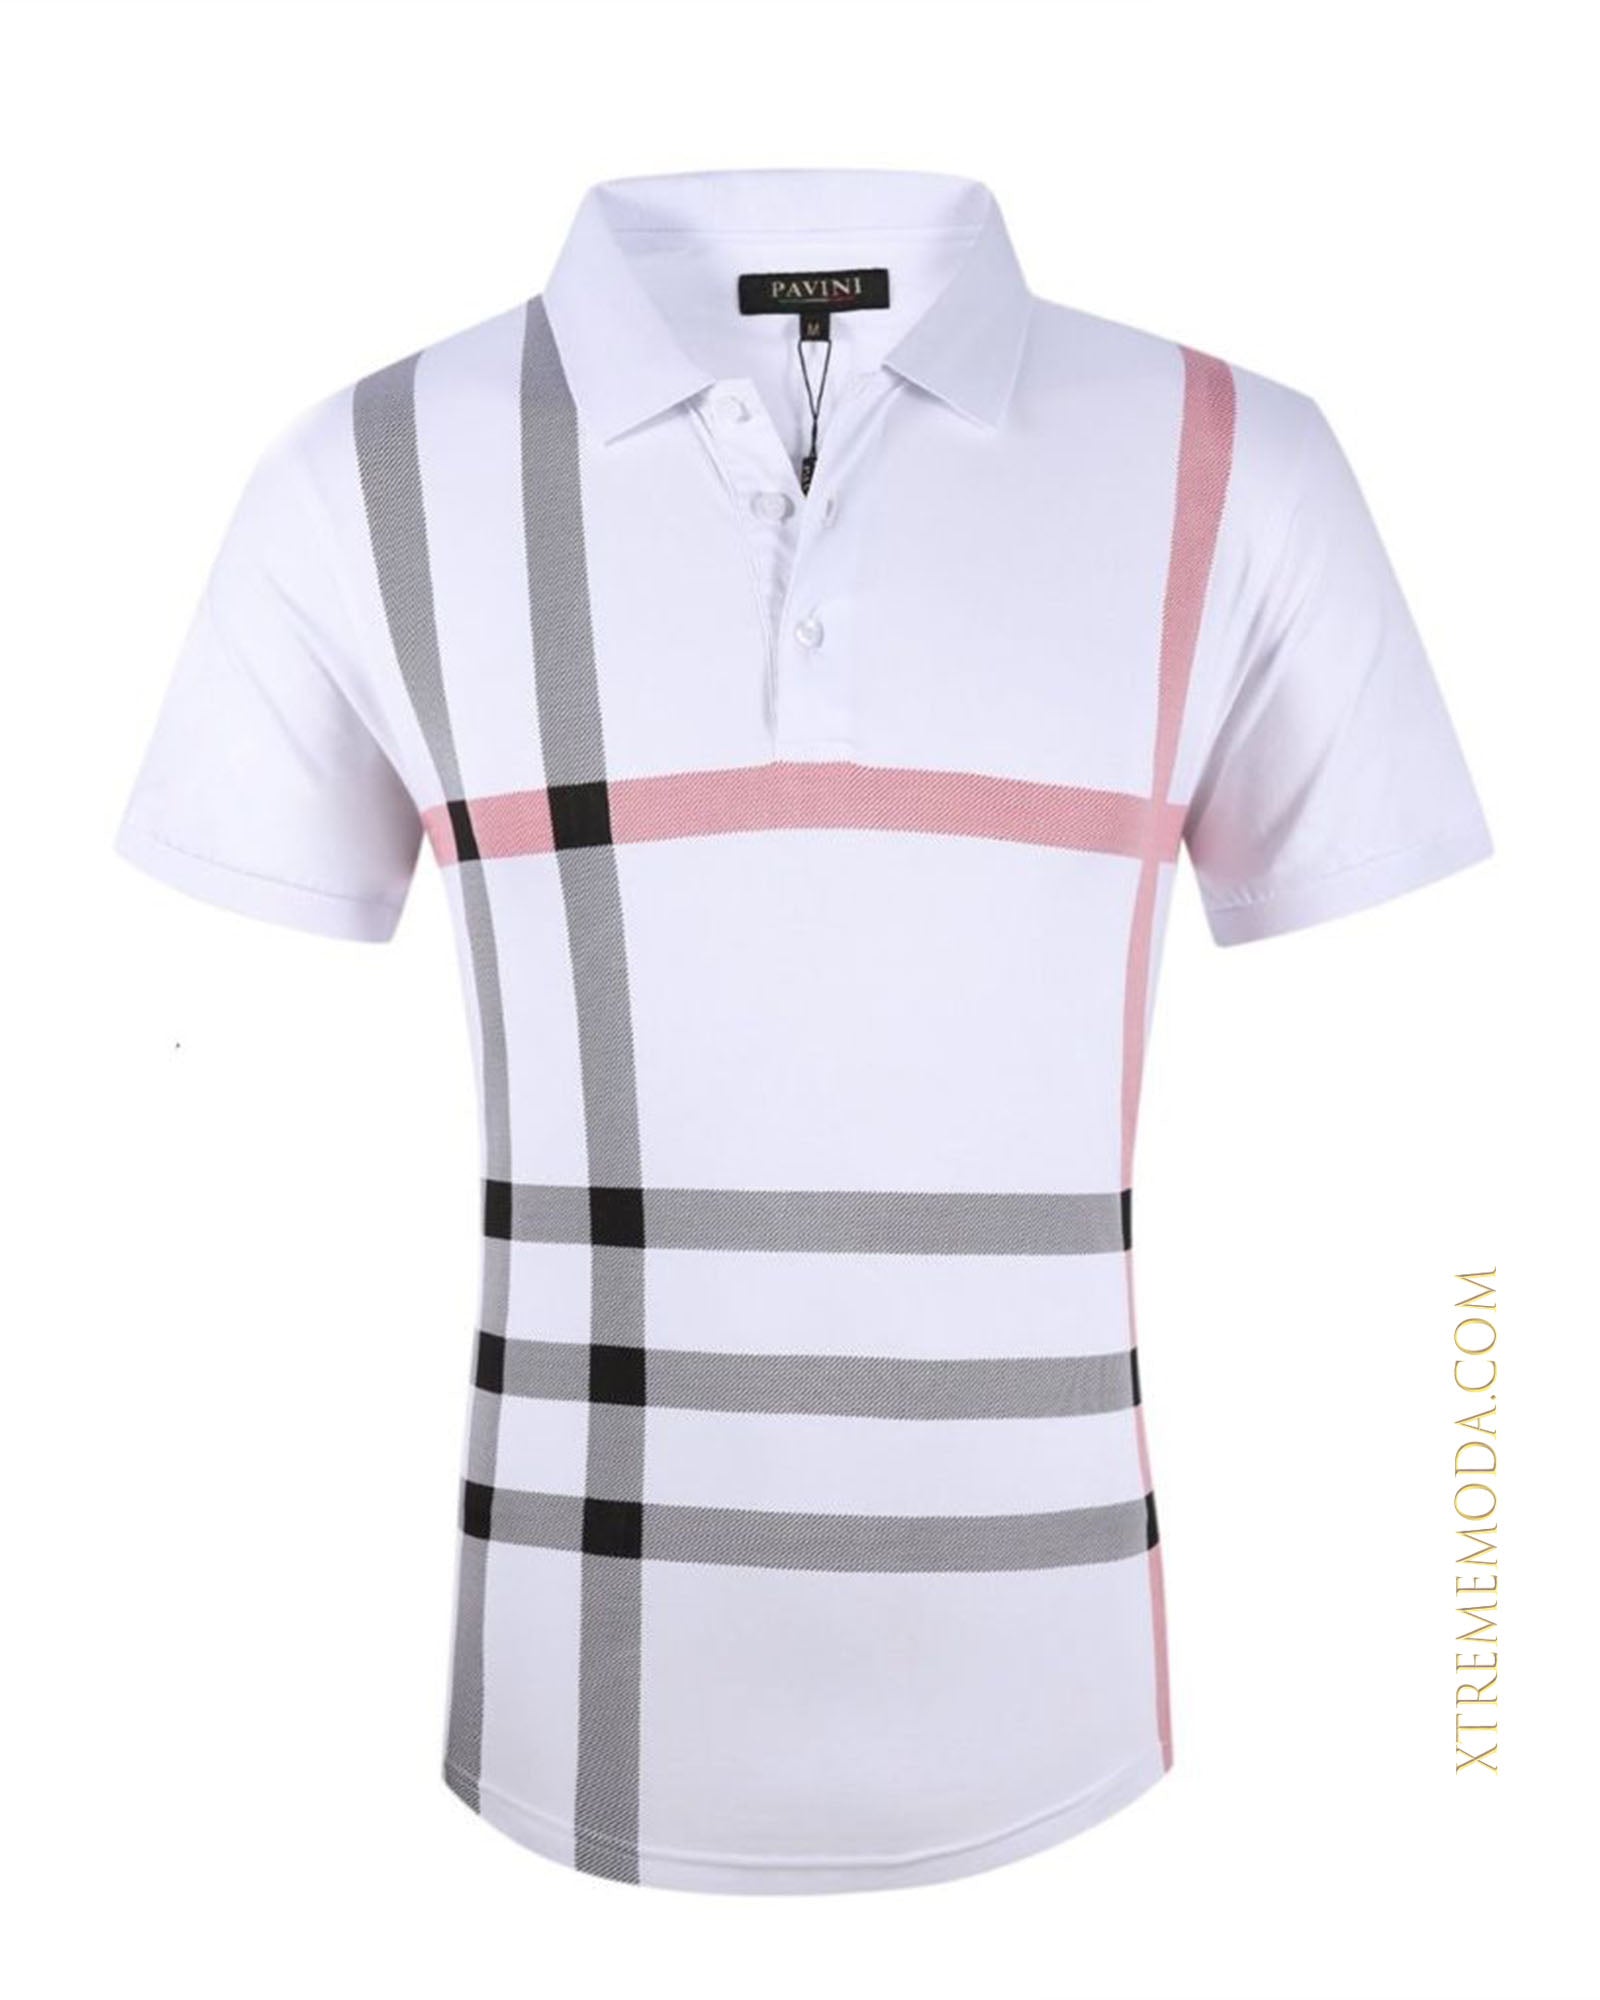 Fashion plaid design polo shirt wht